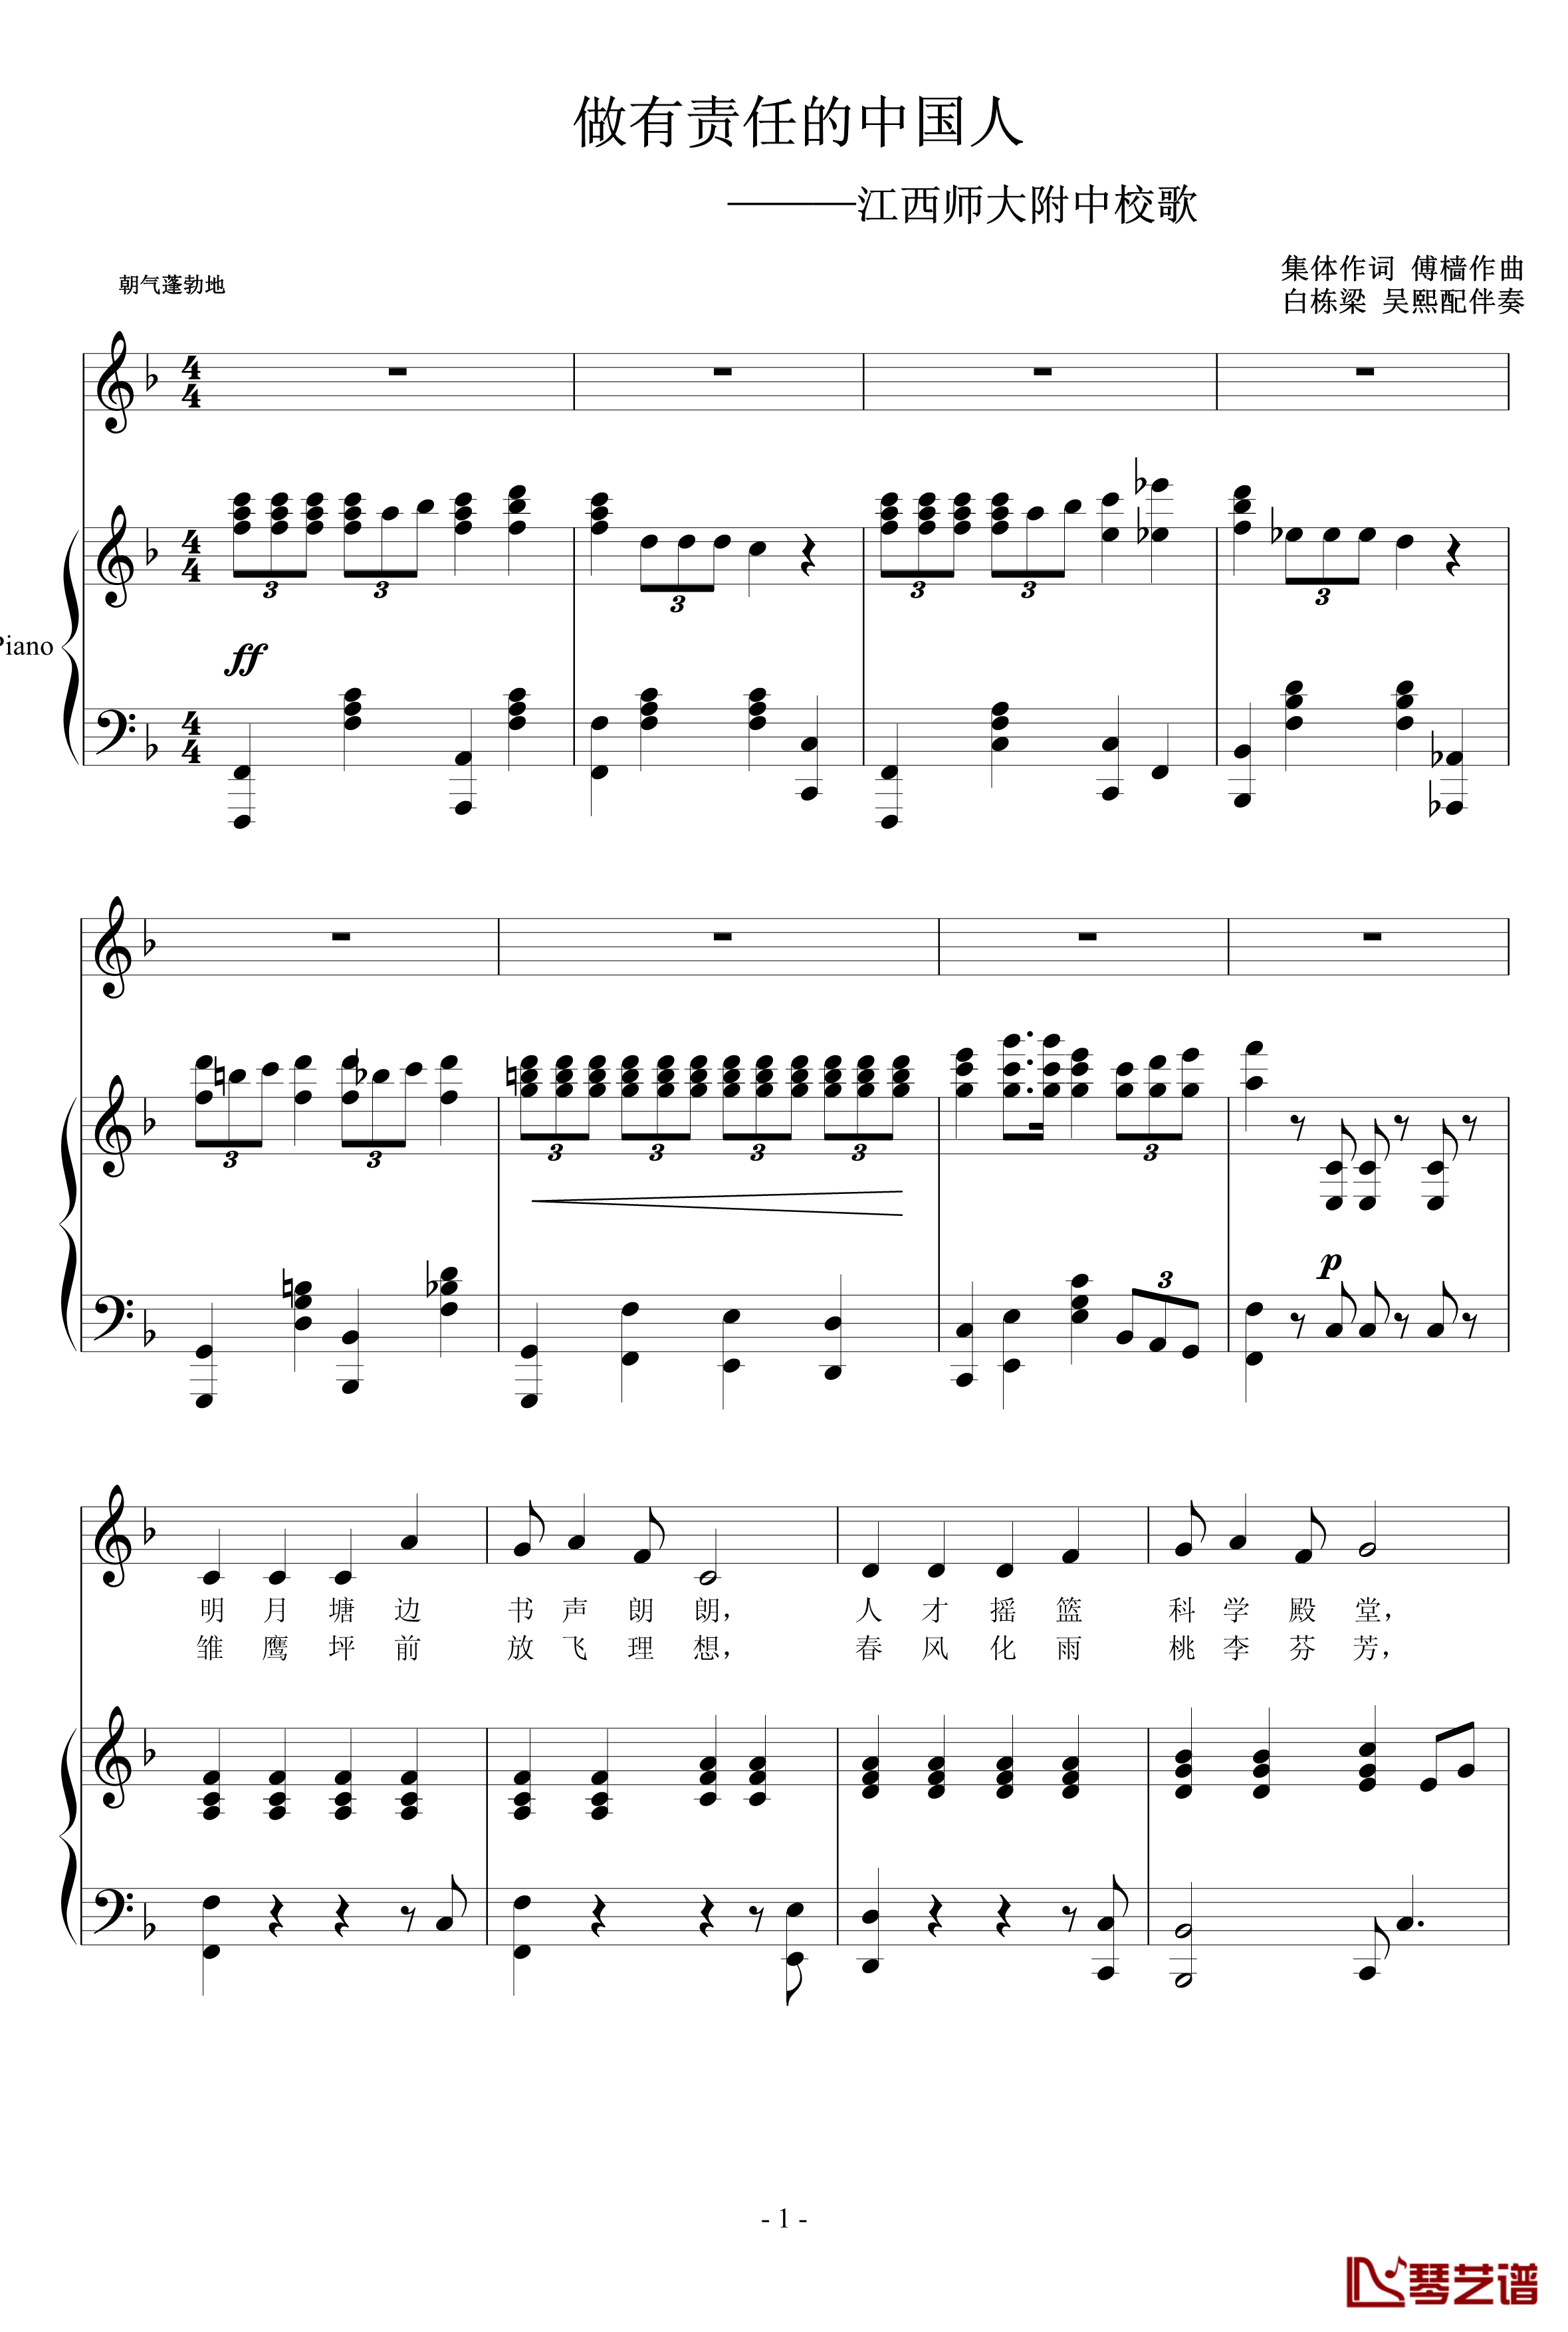 江西师大附中校歌钢琴谱-做有责任的中国人钢琴伴奏谱1